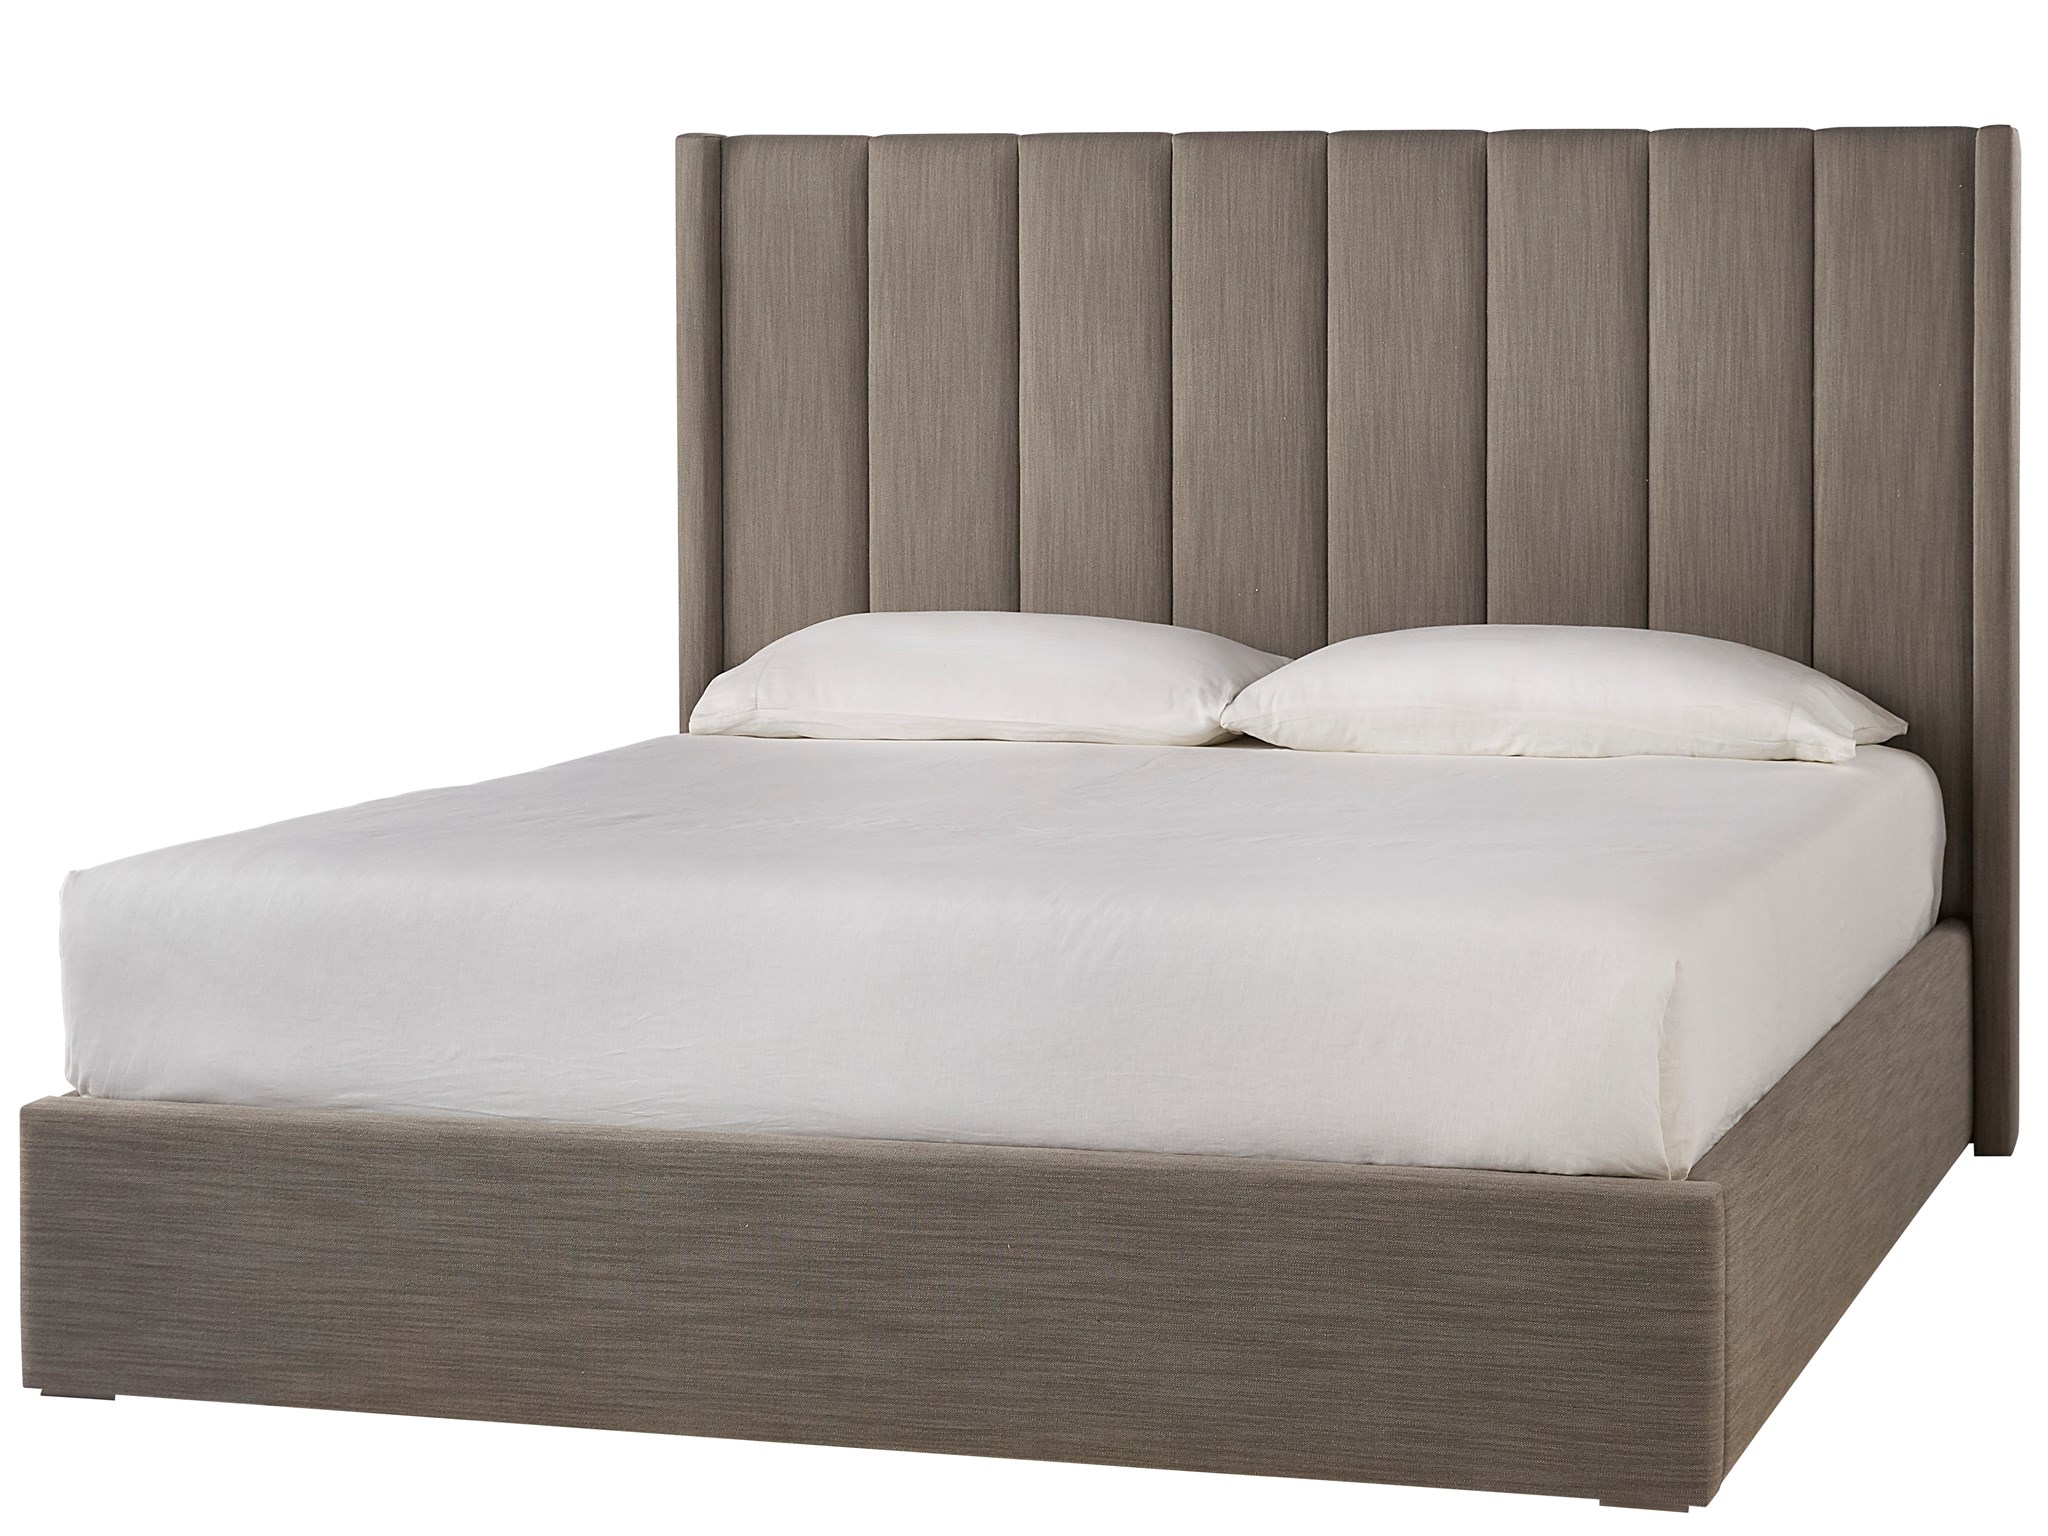 Upholstered Shelter King Bed